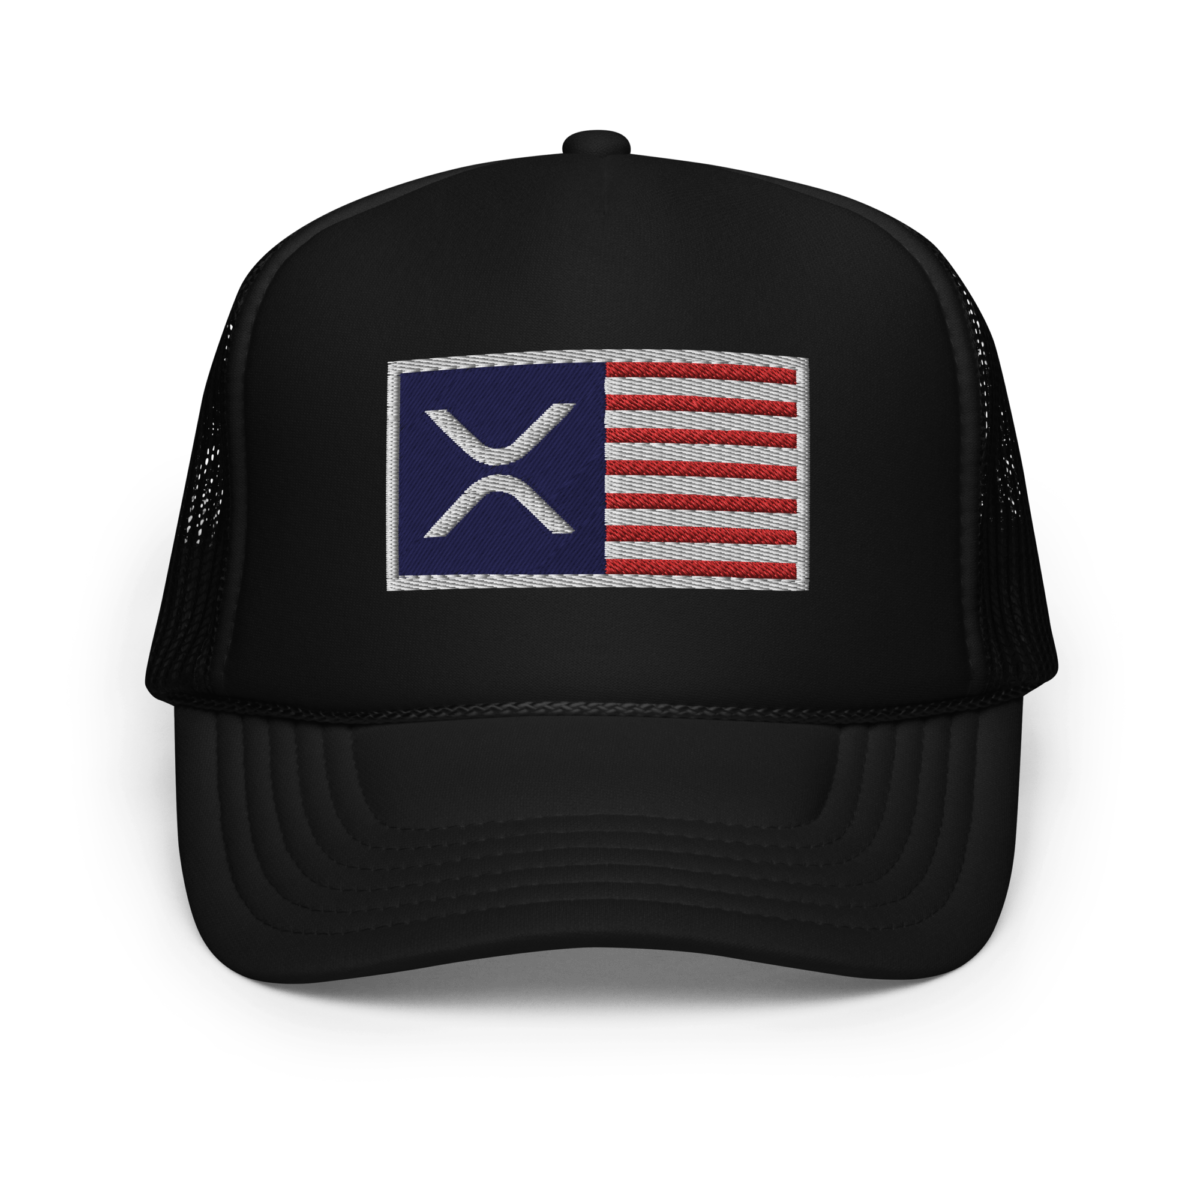 foam trucker hat black one size front 632b6a246c4e6 - XRP: USA Flag Foam Trucker Hat